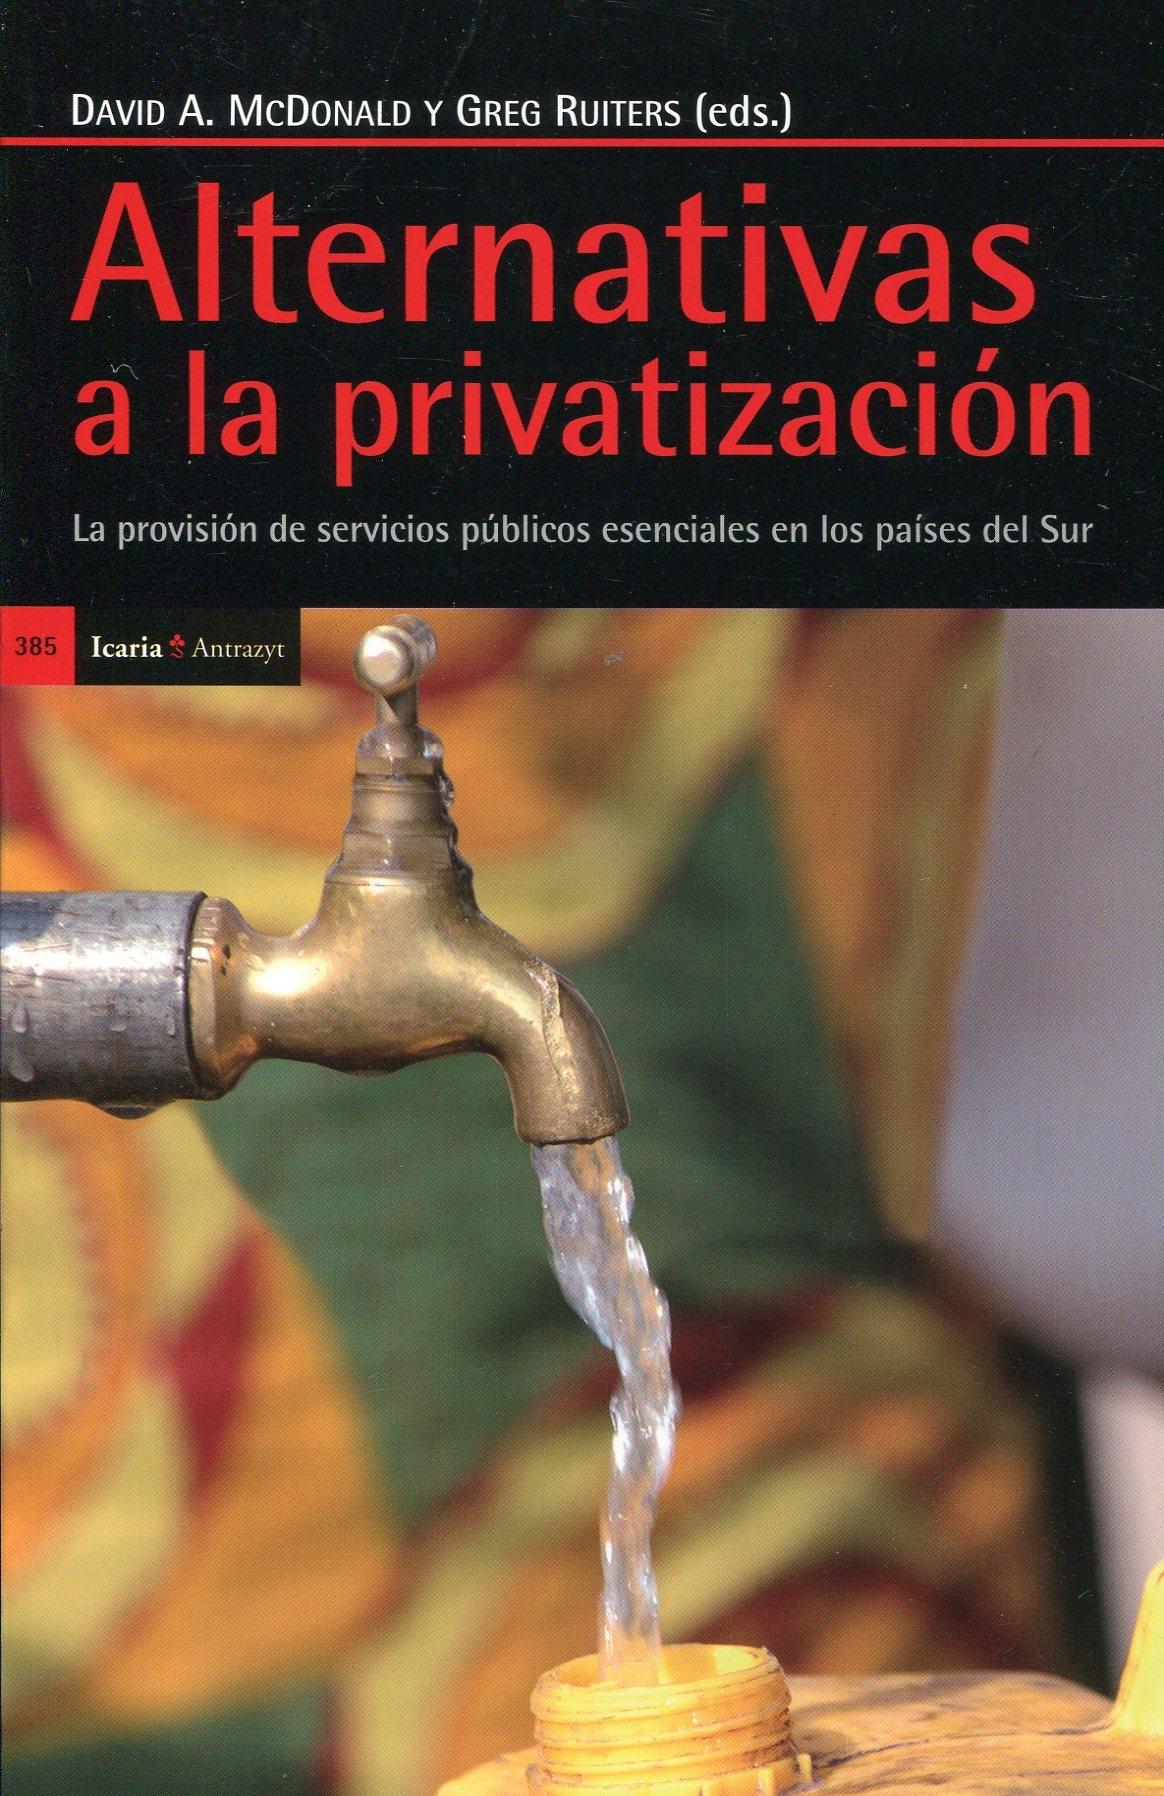 Alternativas a la privatización "La provisión de servicios públicos esenciales en los países del"